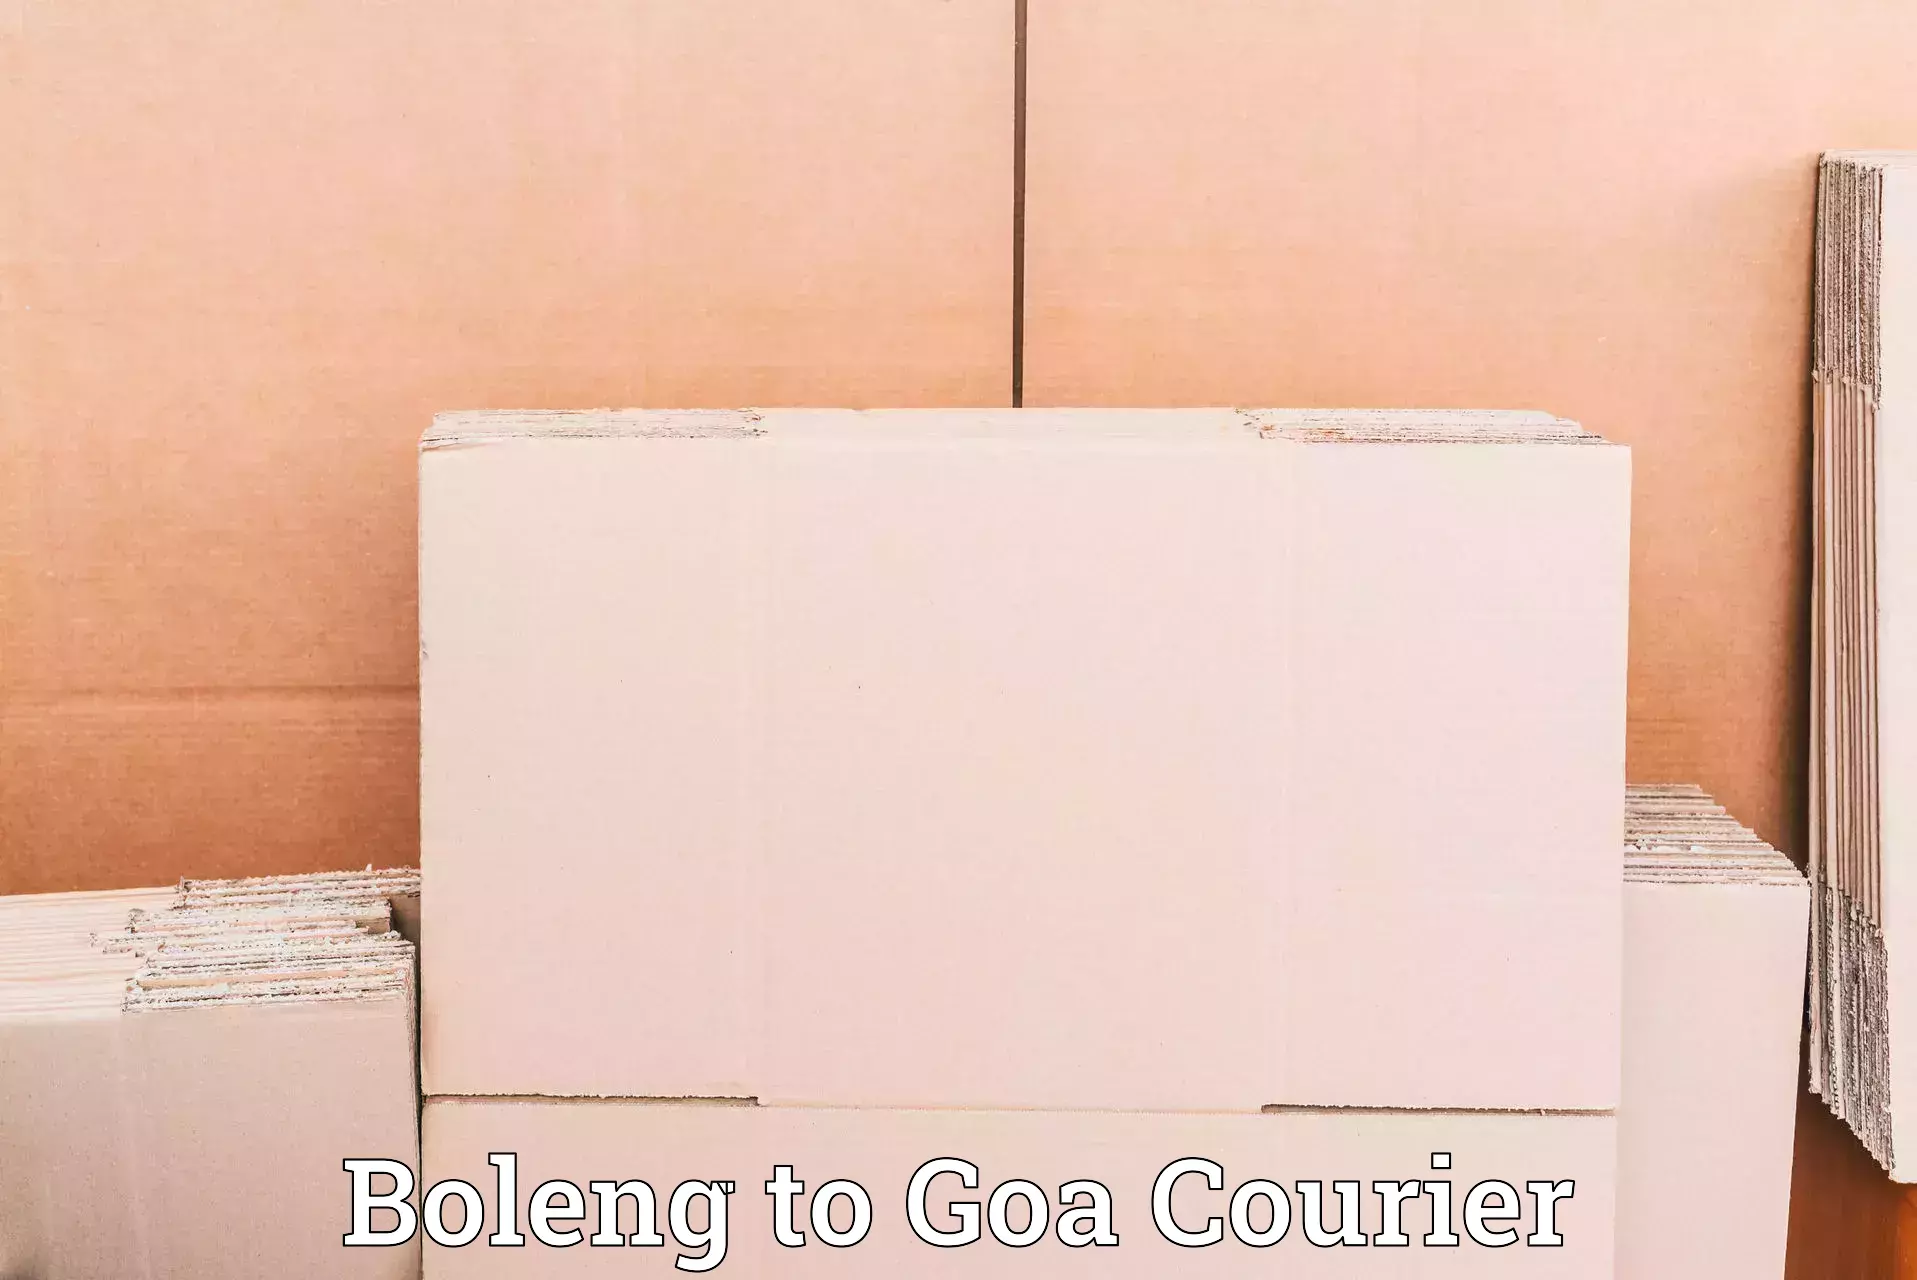 High-capacity parcel service Boleng to Goa